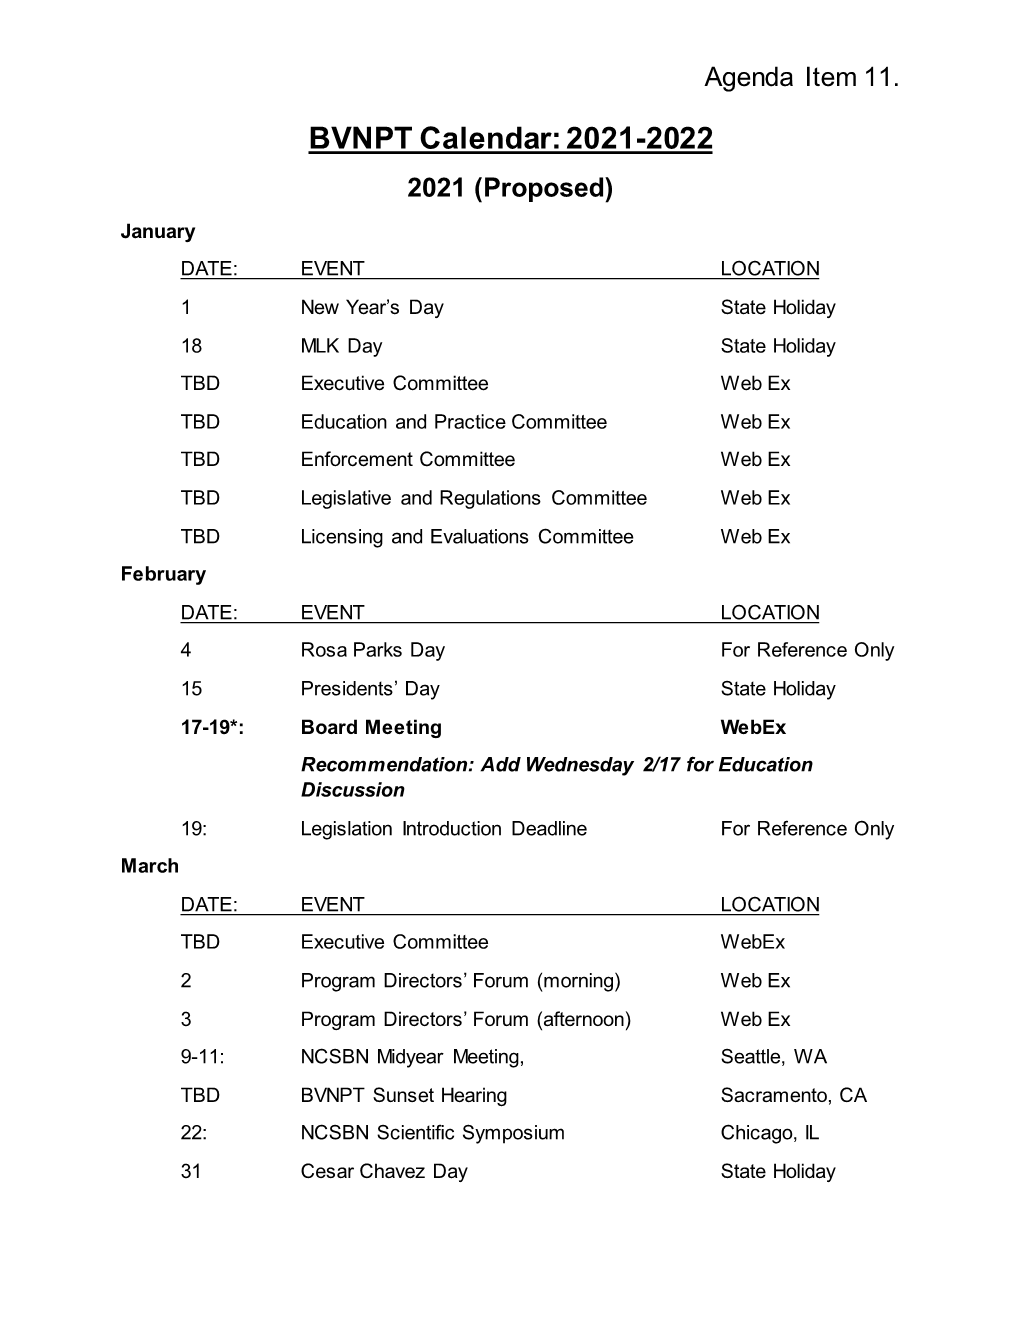 BVNPT Calendar: 2021-2022